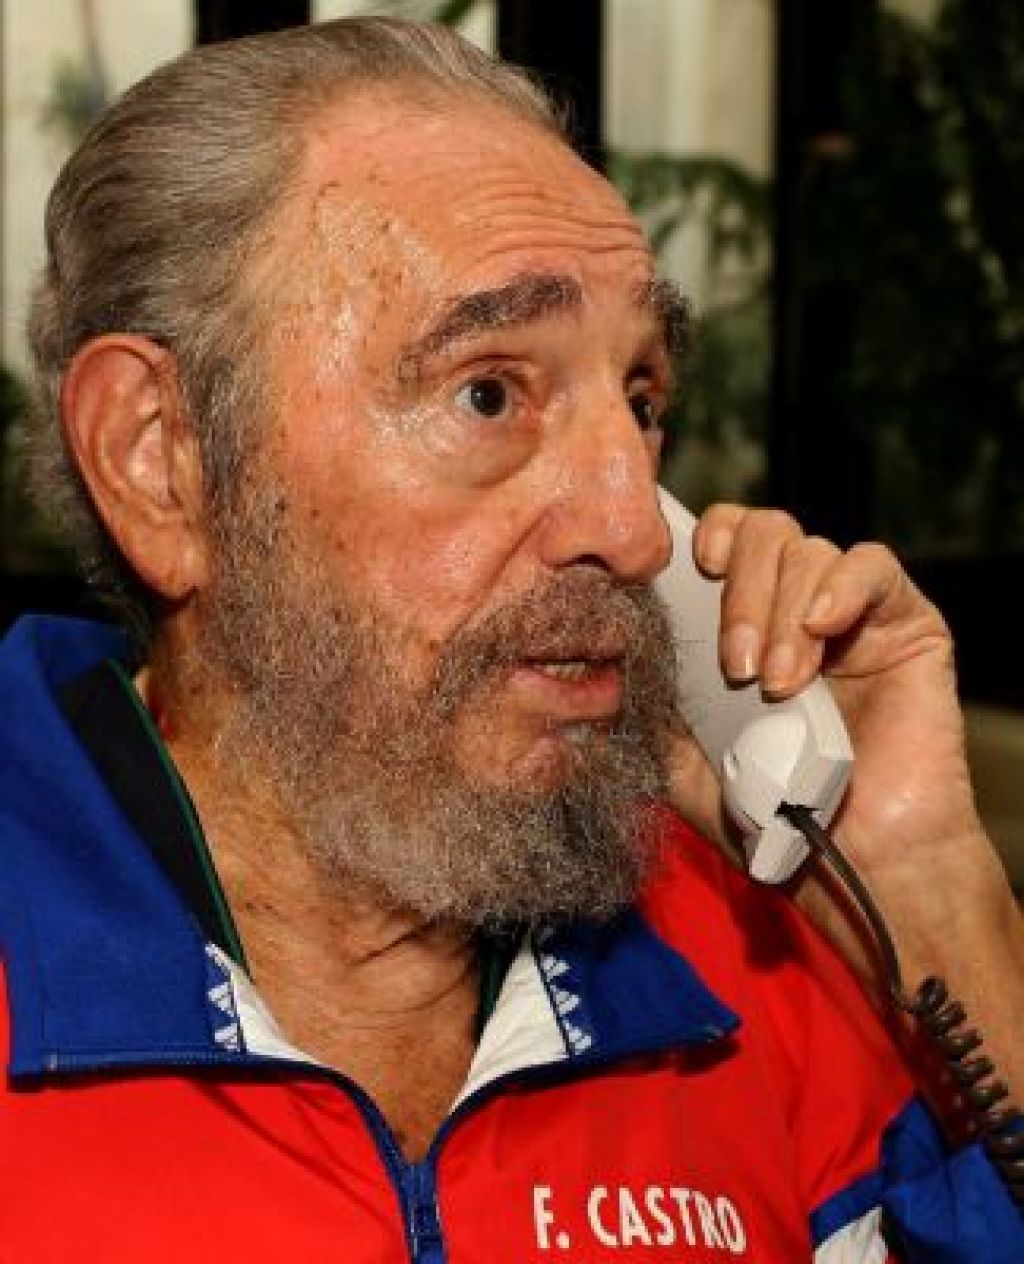 Castro spregovoril po radiu